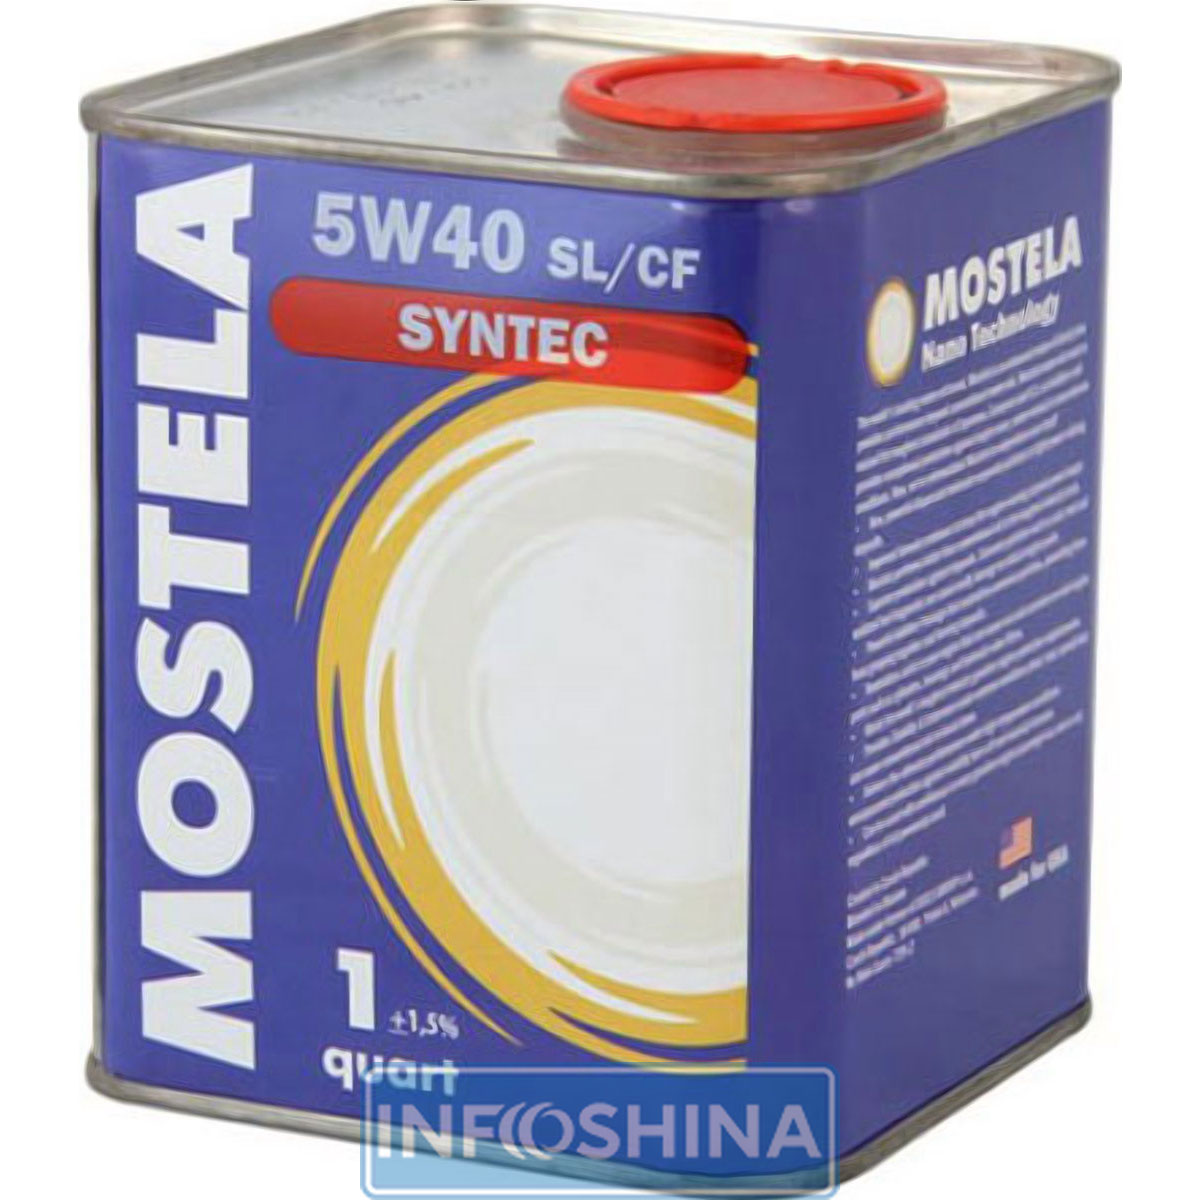 Купить масло Mostela Syntec